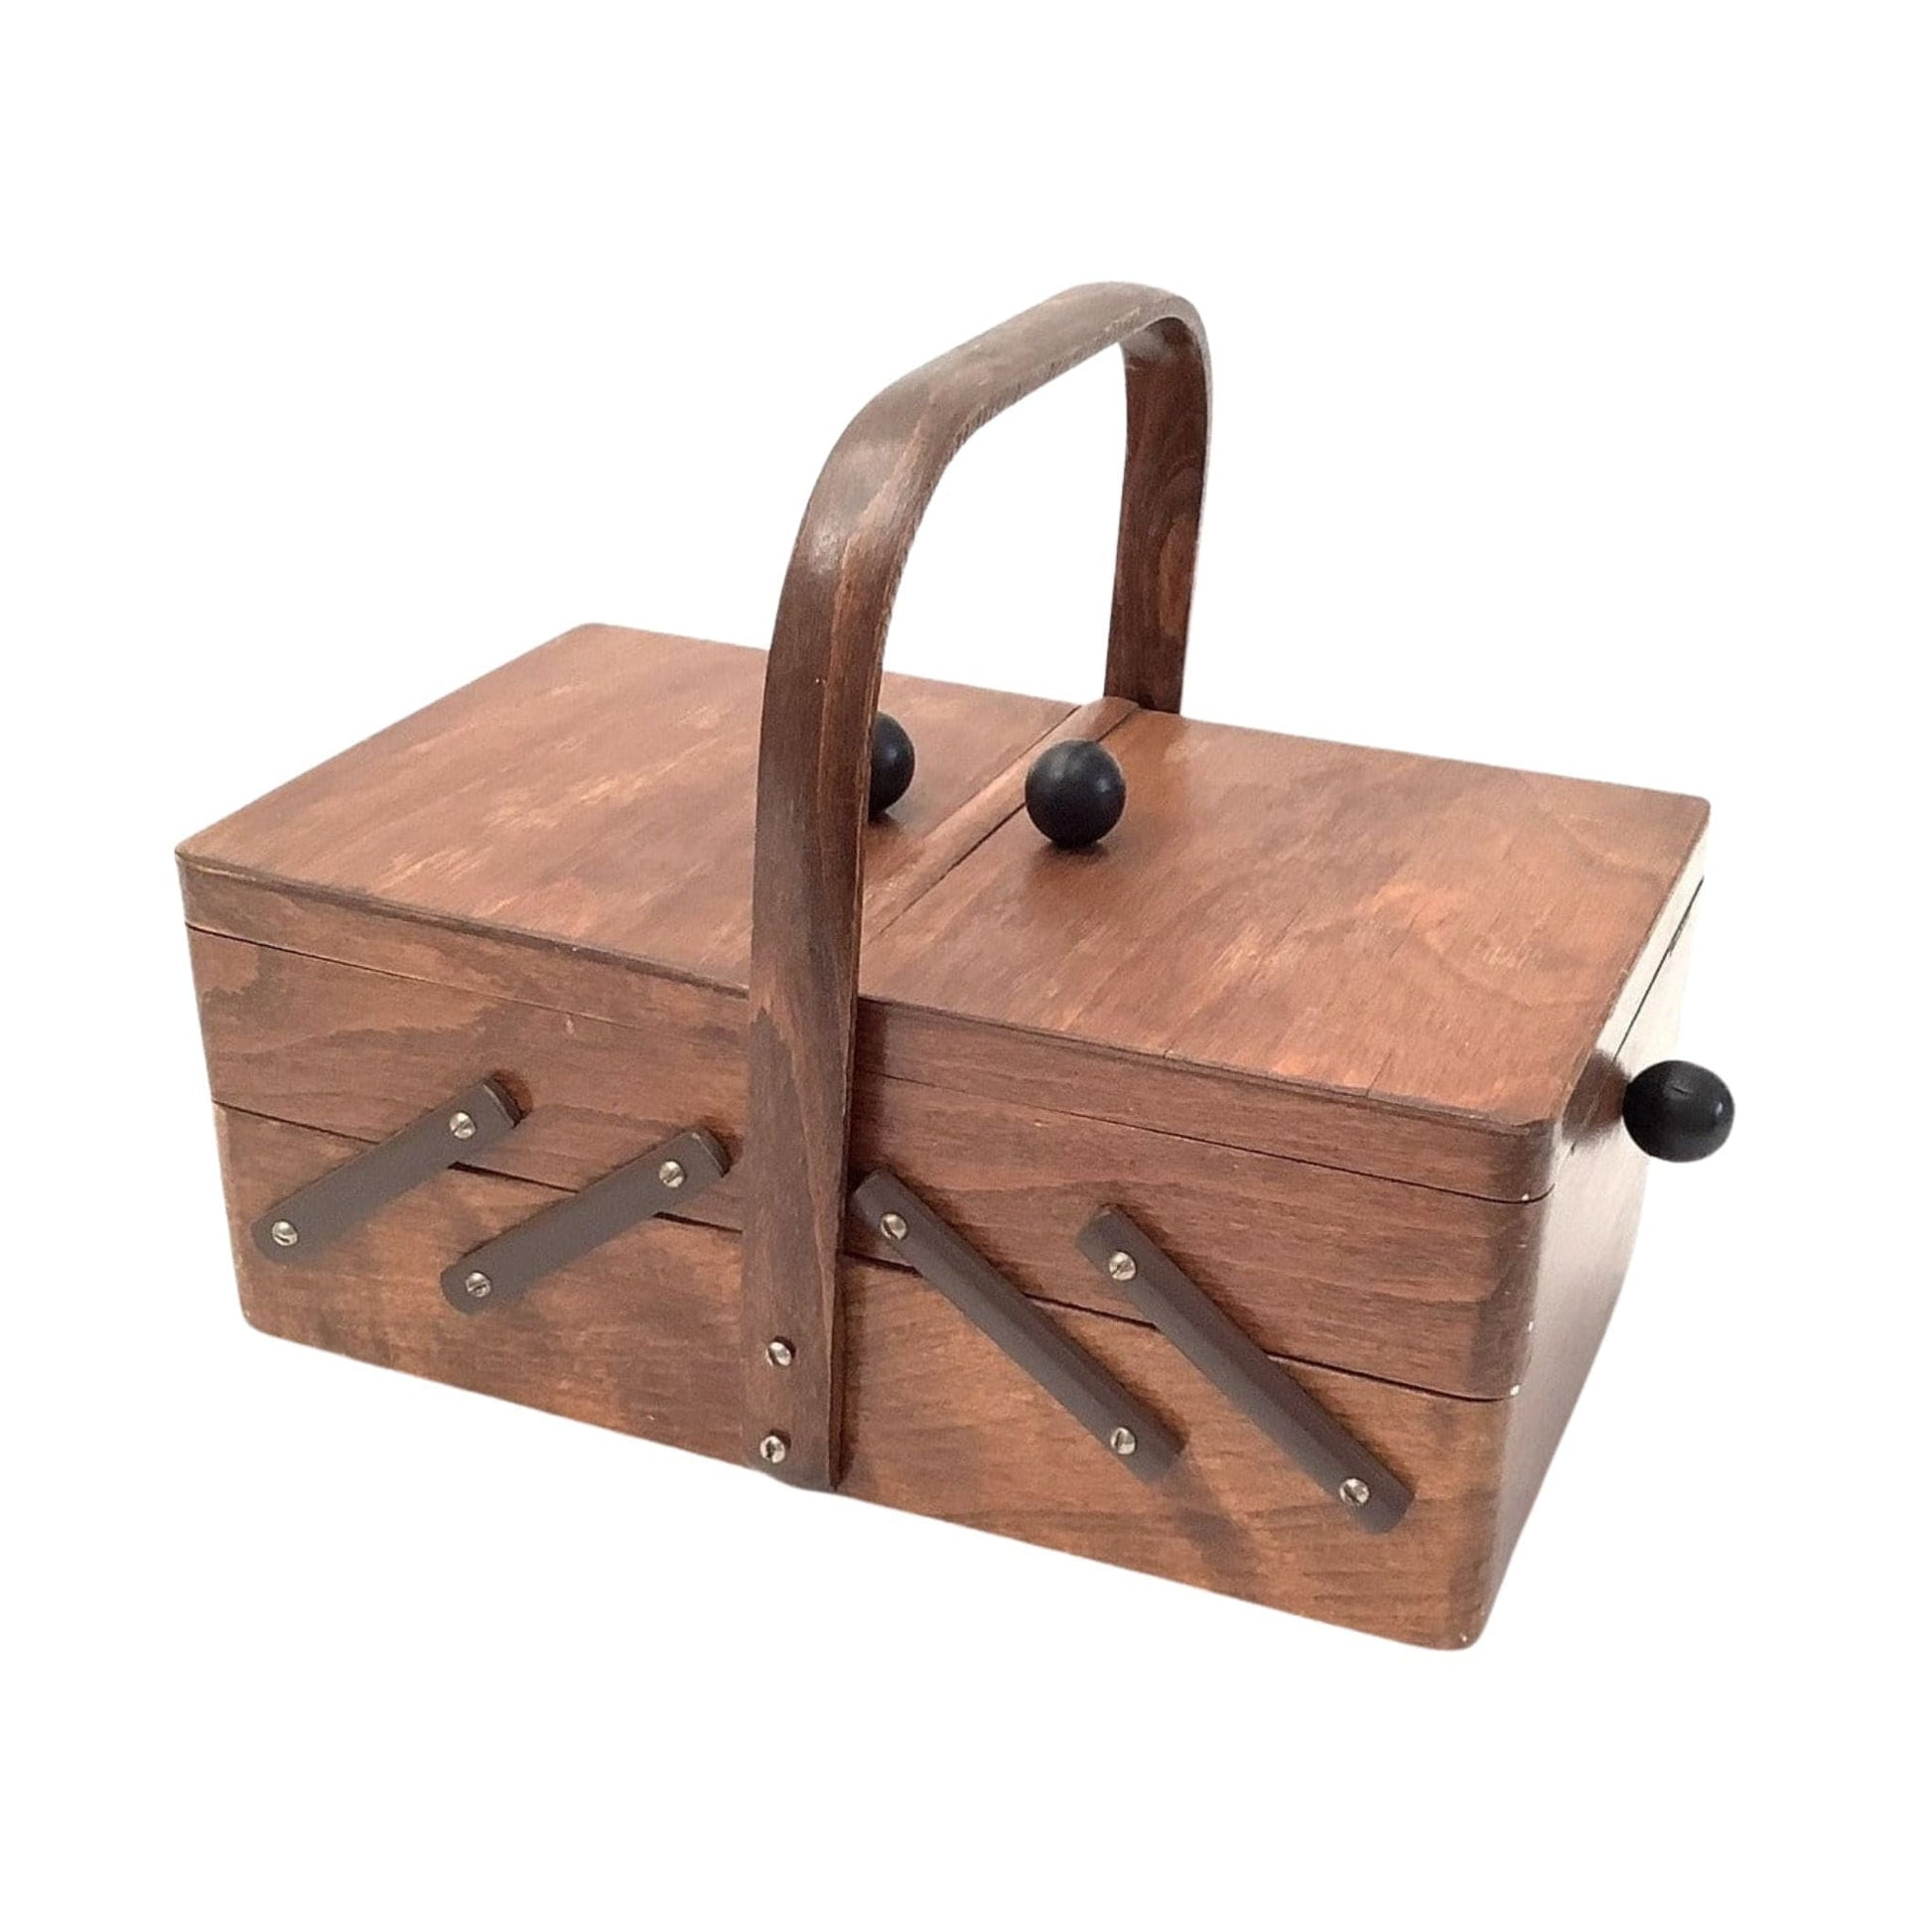 Articulated Sewing Basket Brown / Wood / Vintage 1950s